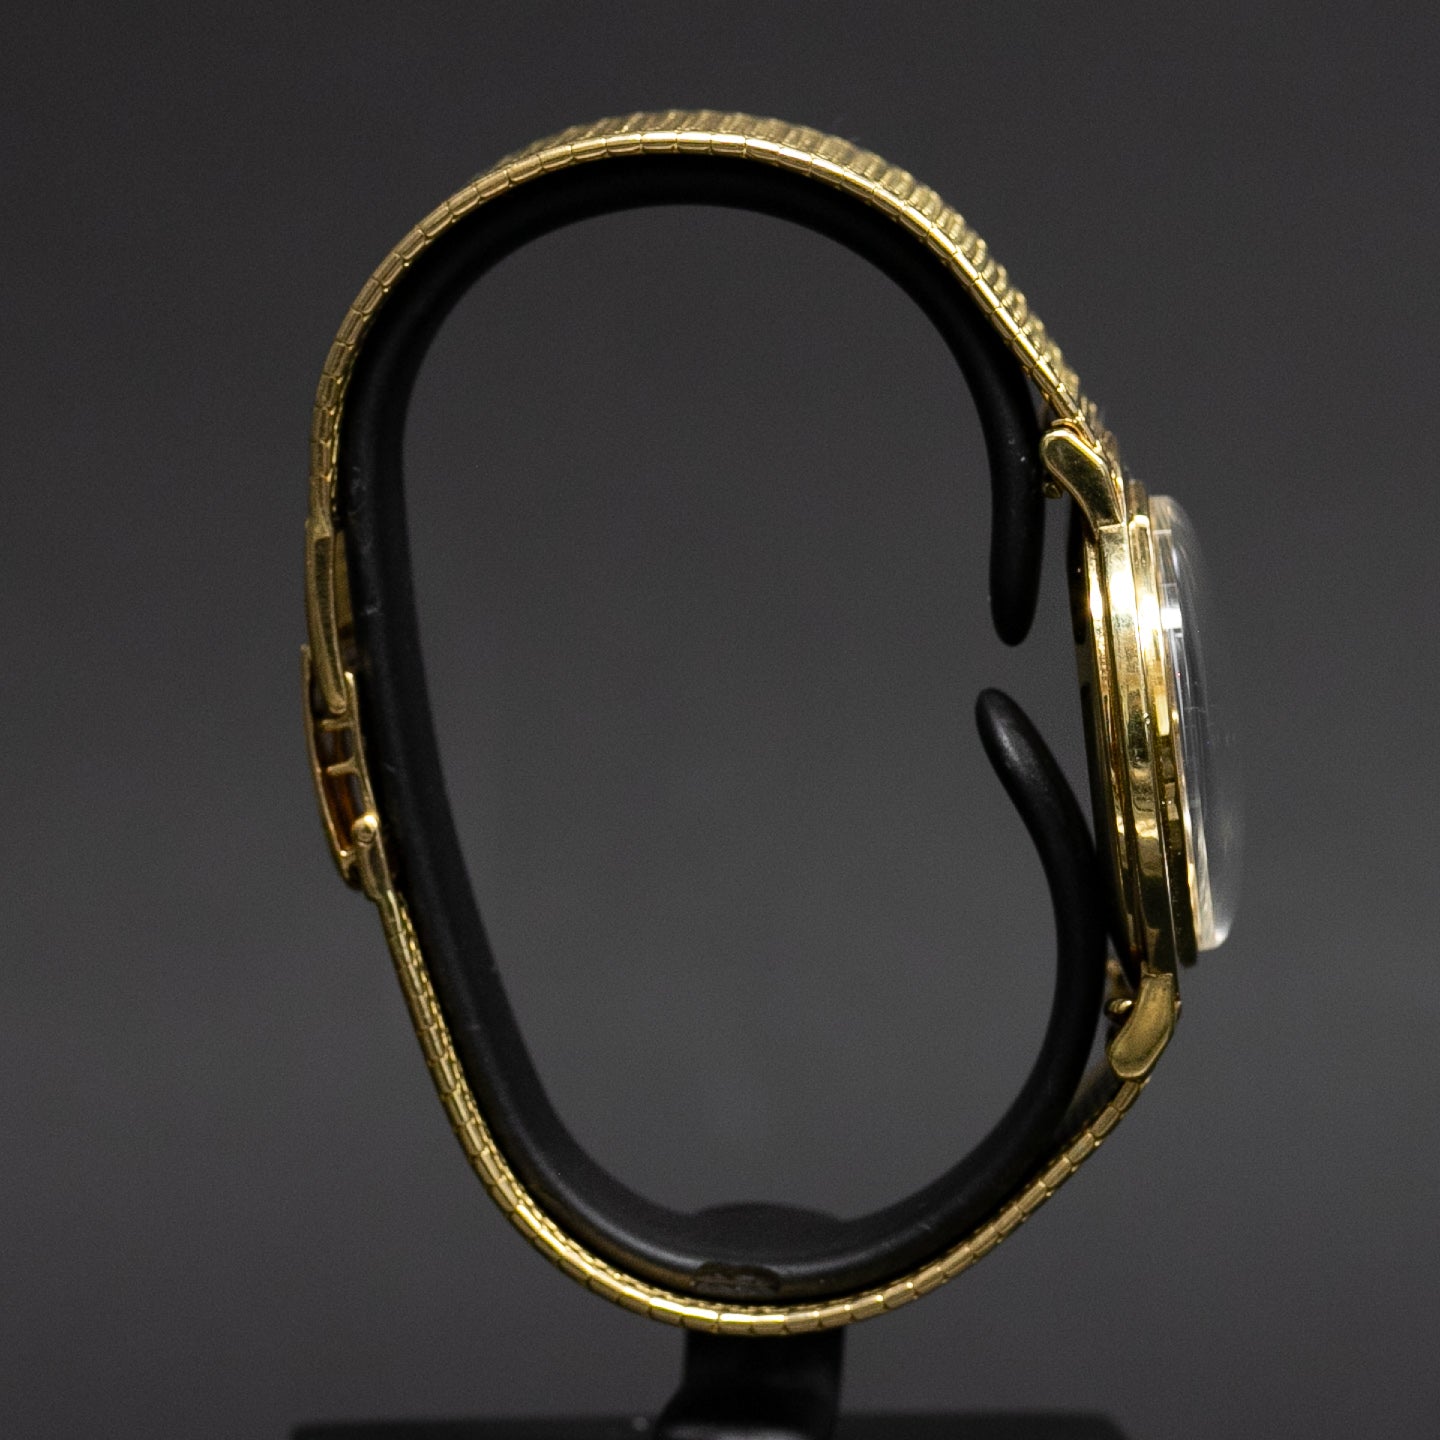 Oméga Genève Soucoupe bracelet en or 15752 SC - L'Atelier du Temps